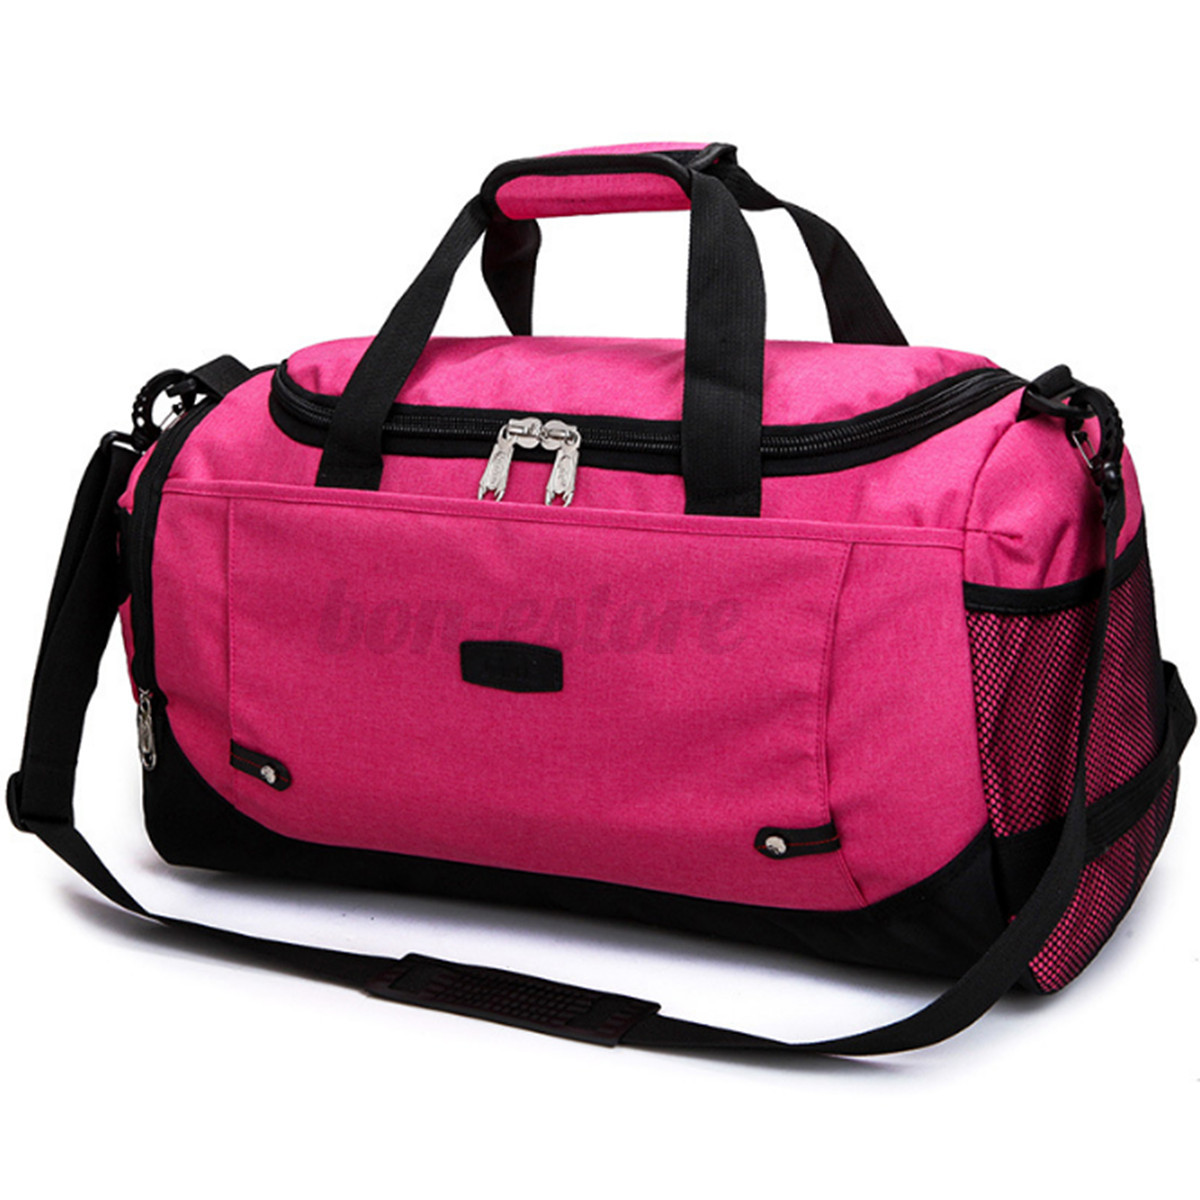 Женская спортивная сумка women's Gym Sports Travel Bag Daypack Duffle Pack Shoulder Bag hand Bag